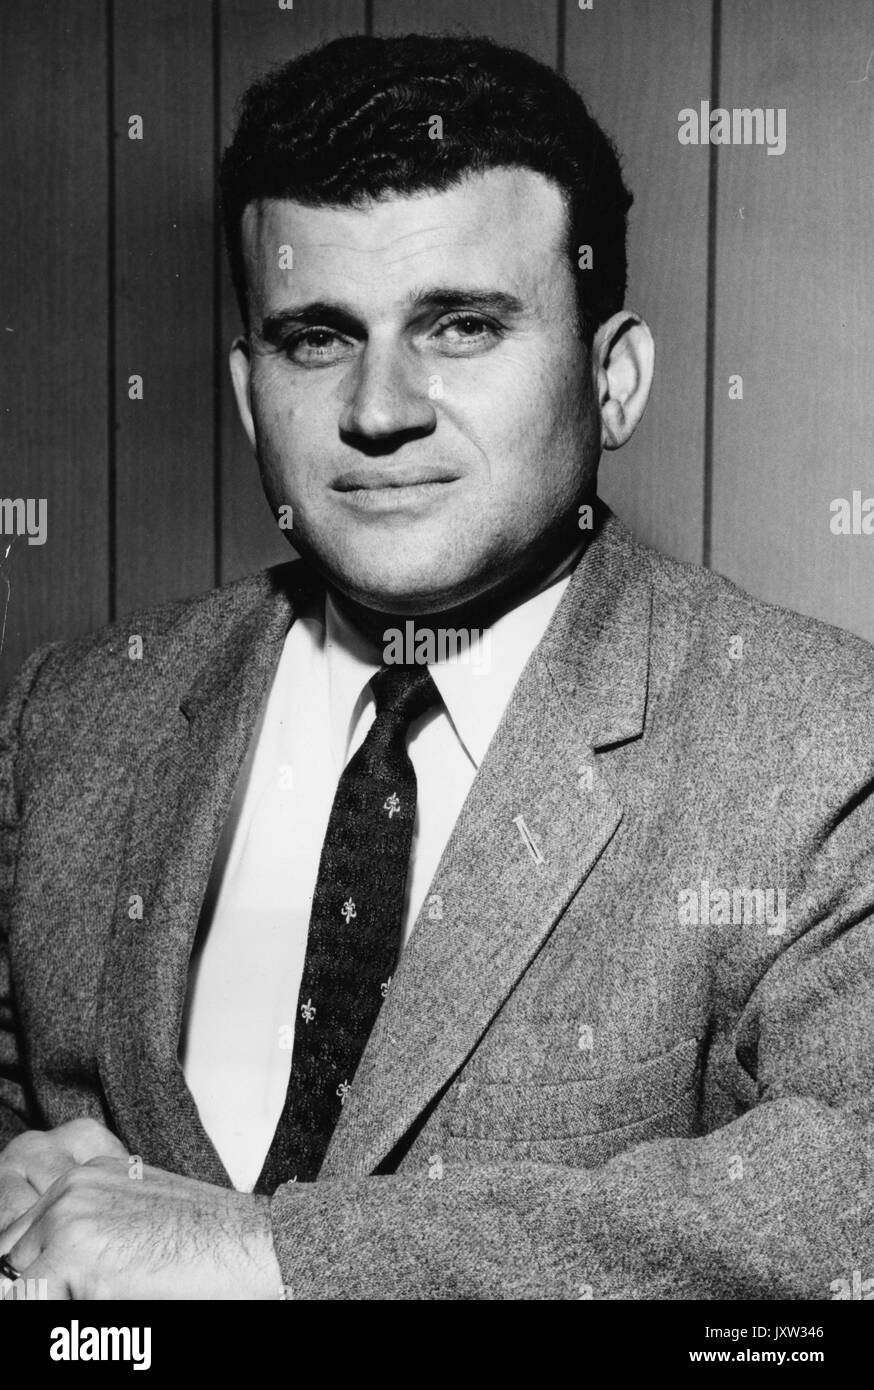 Simon hyman diskin, portrait photographique, de la poitrine vers le haut, de face, c 35 ans d'âge, 1955. Banque D'Images